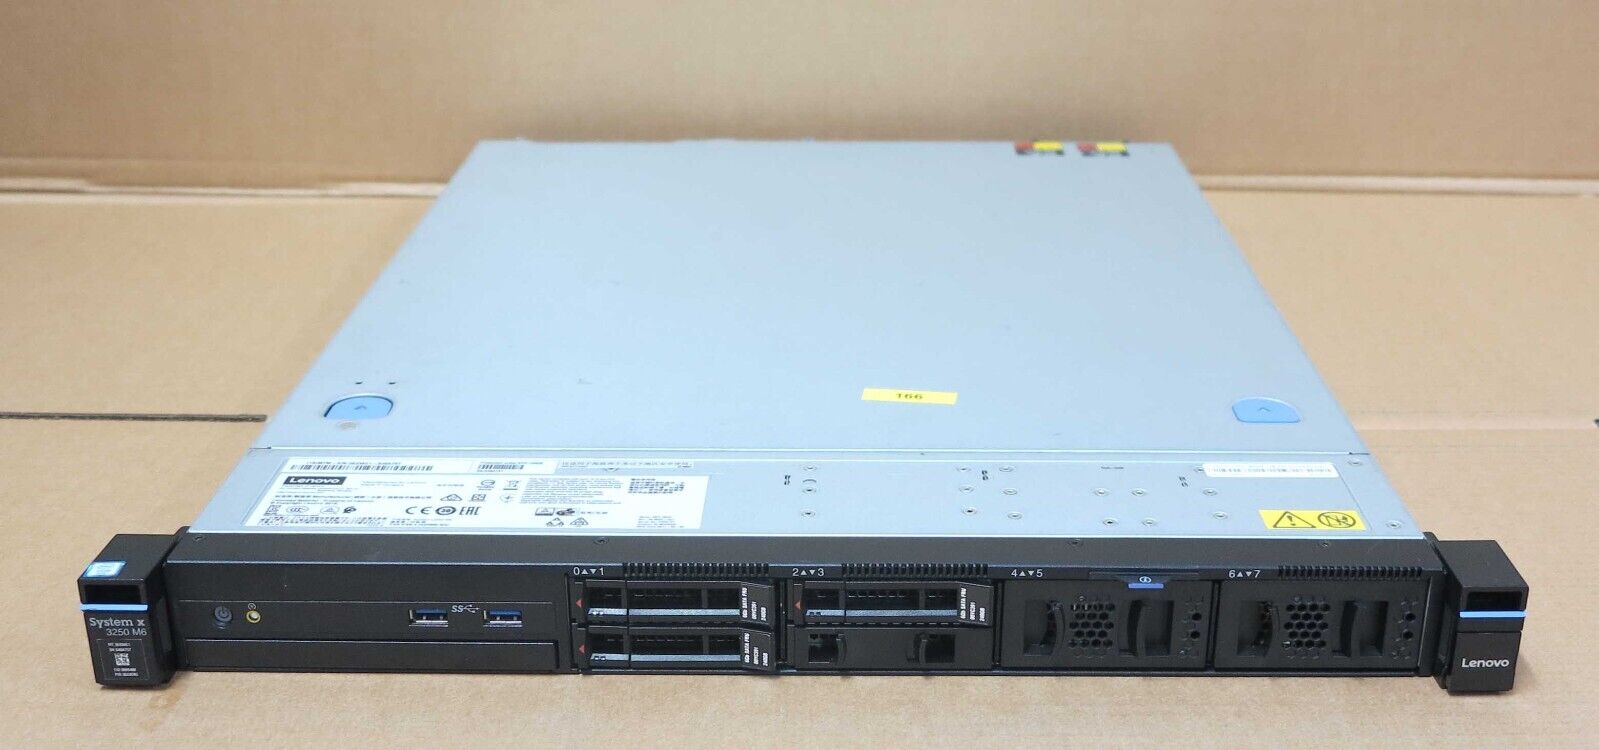 Lenovo System x3250 M6 3633-AC1 1x 4C E3-1220v5 16GB Ram 3x 240GB SSD 1U Server